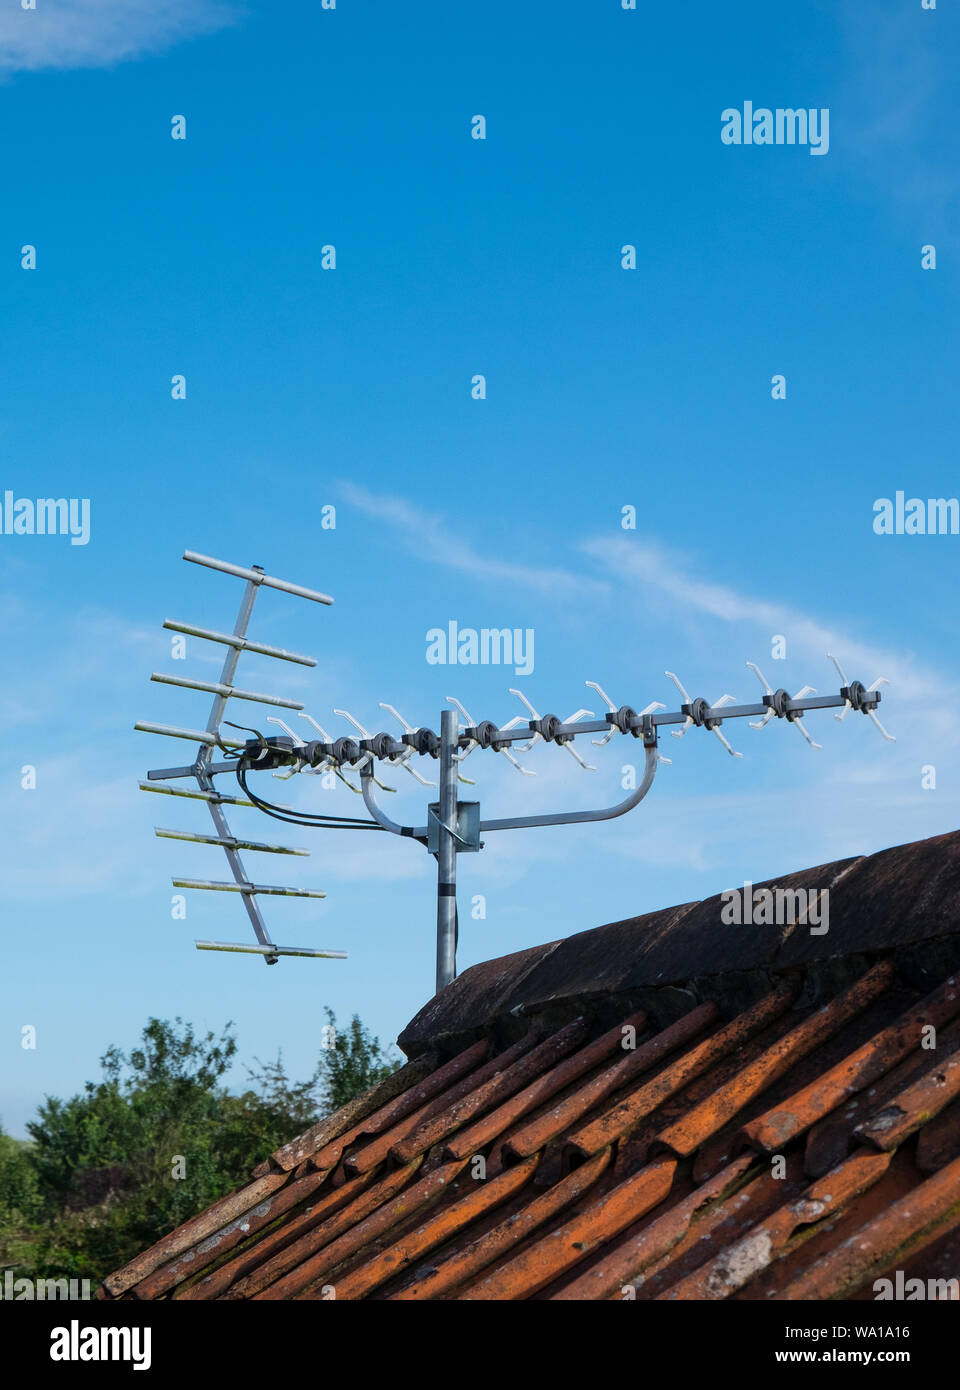 Une antenne TV numérique sur le toit d'une maison contre un ciel bleu Banque D'Images